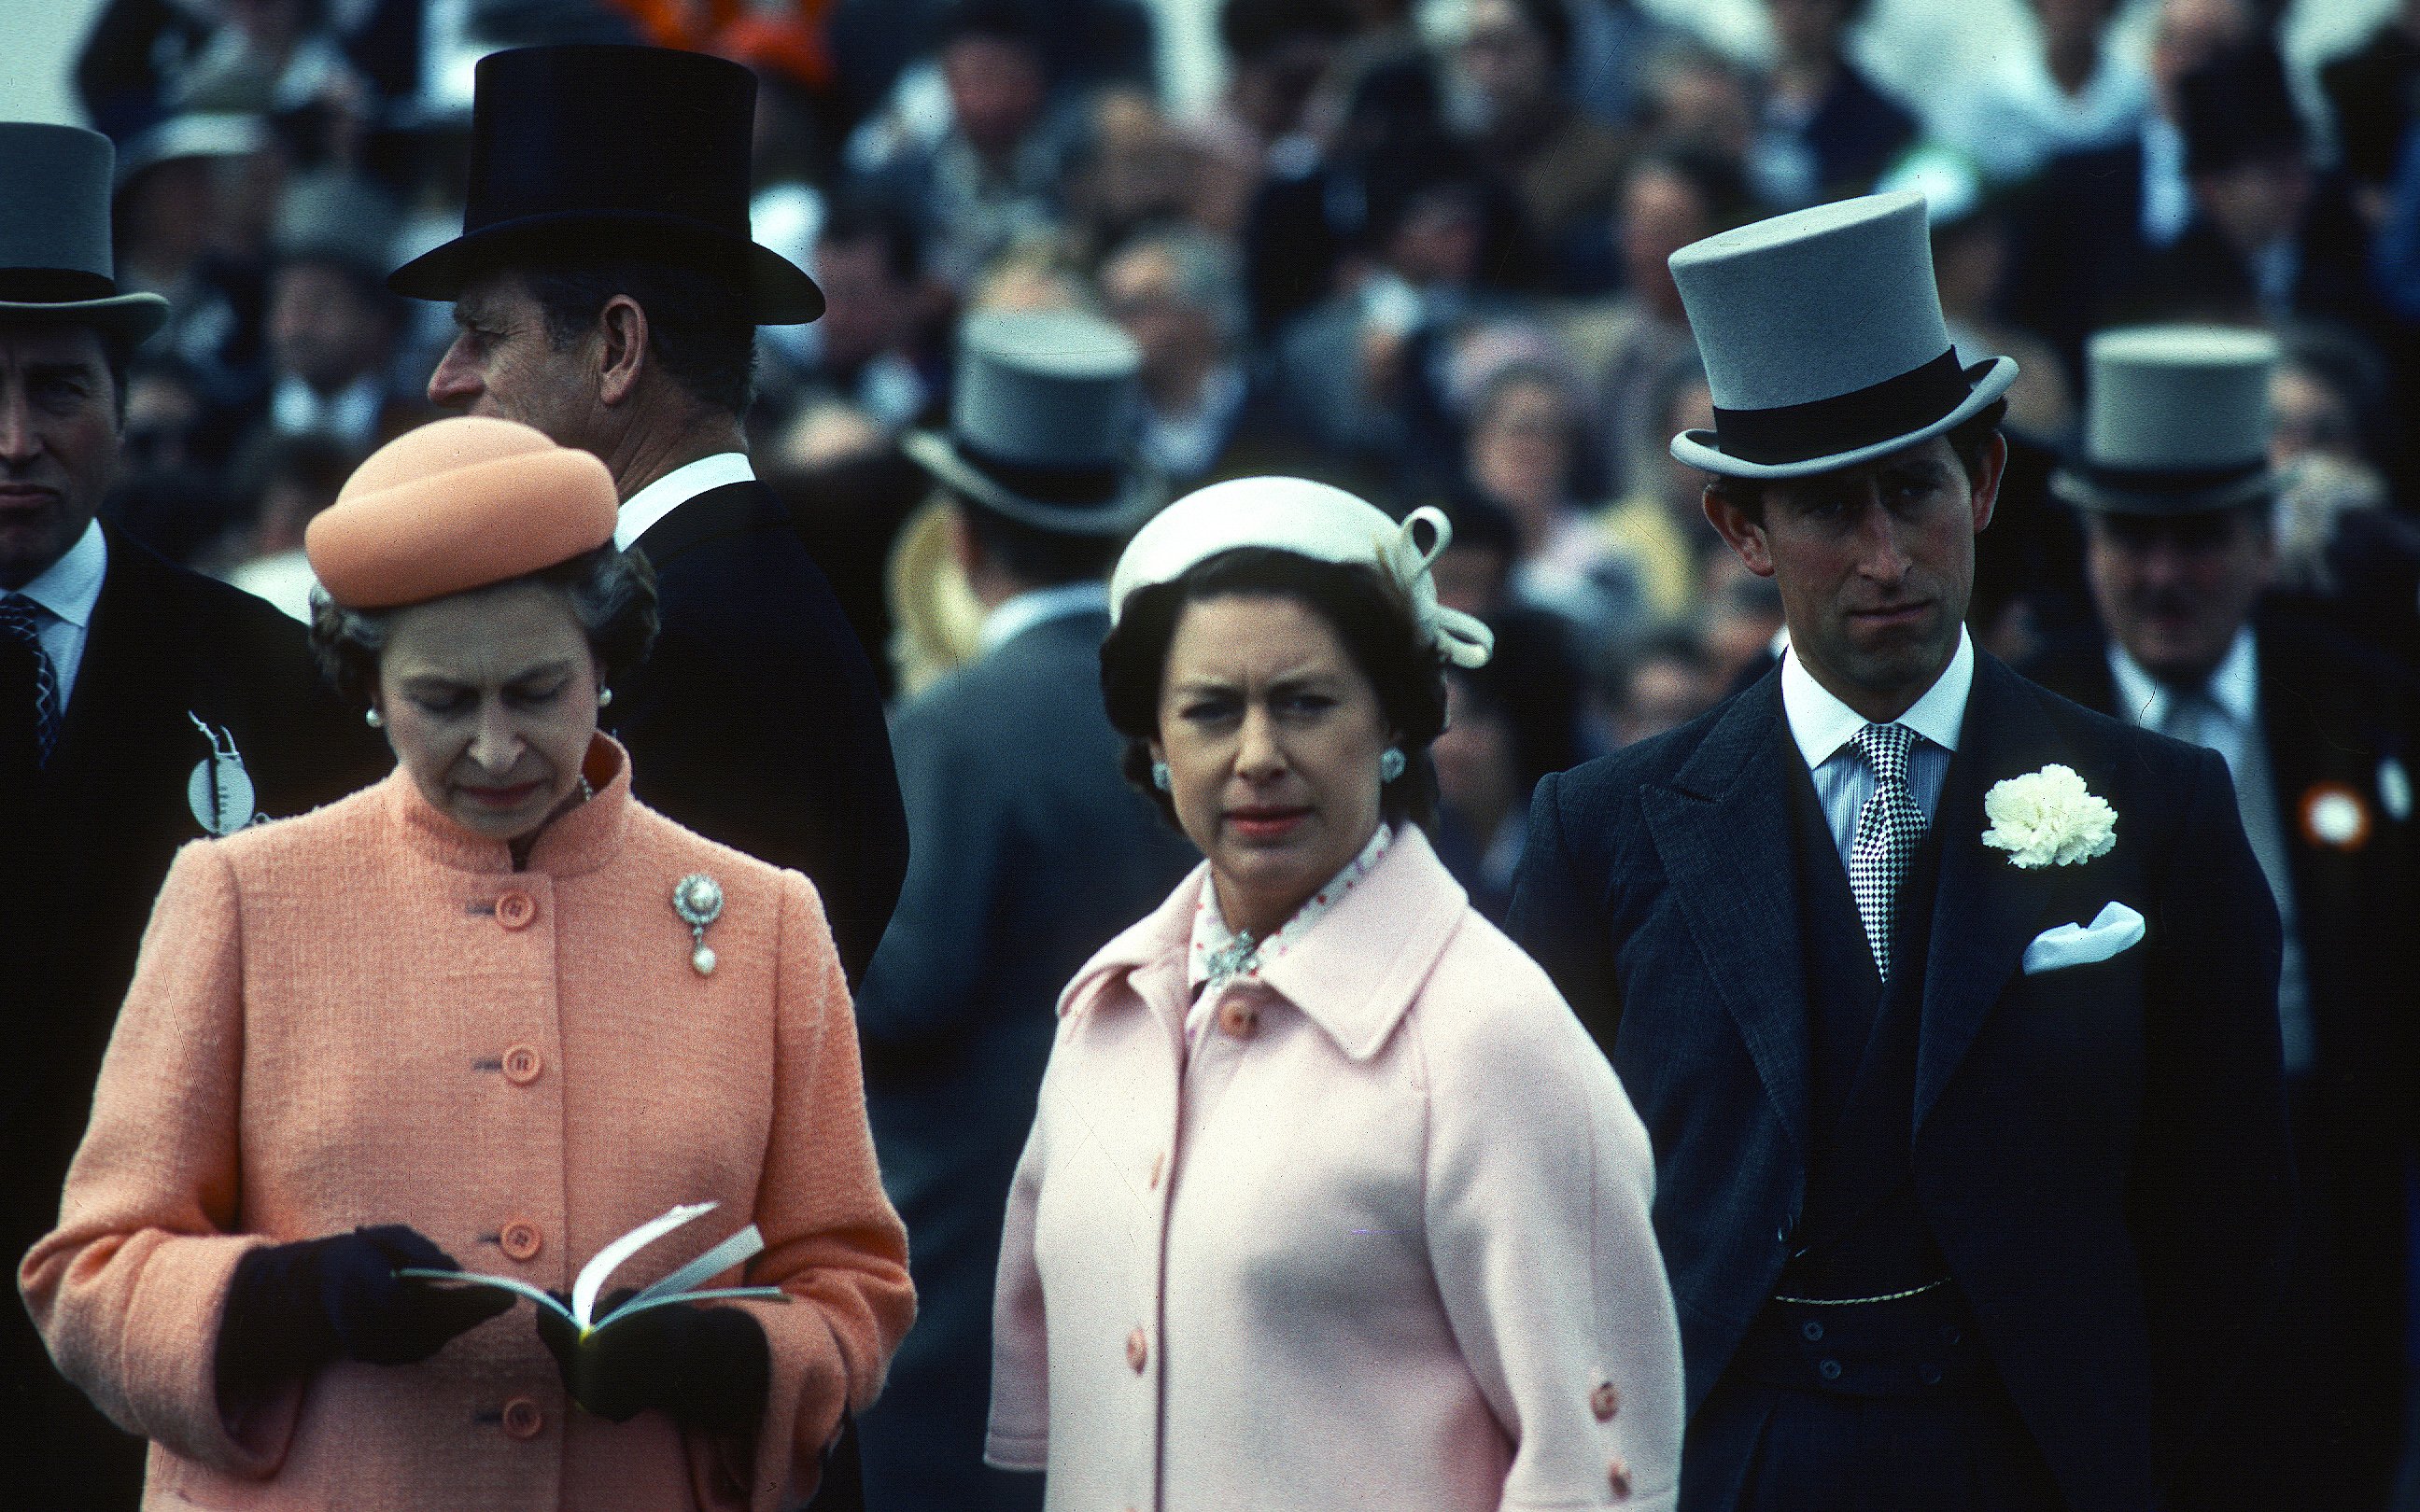 La reina Elizabeth II, la princesa Margaret y el príncipe Charles en Epsom Derby el 6 de junio de 1979 en Epsom, Inglaterra. | Foto: Getty Images